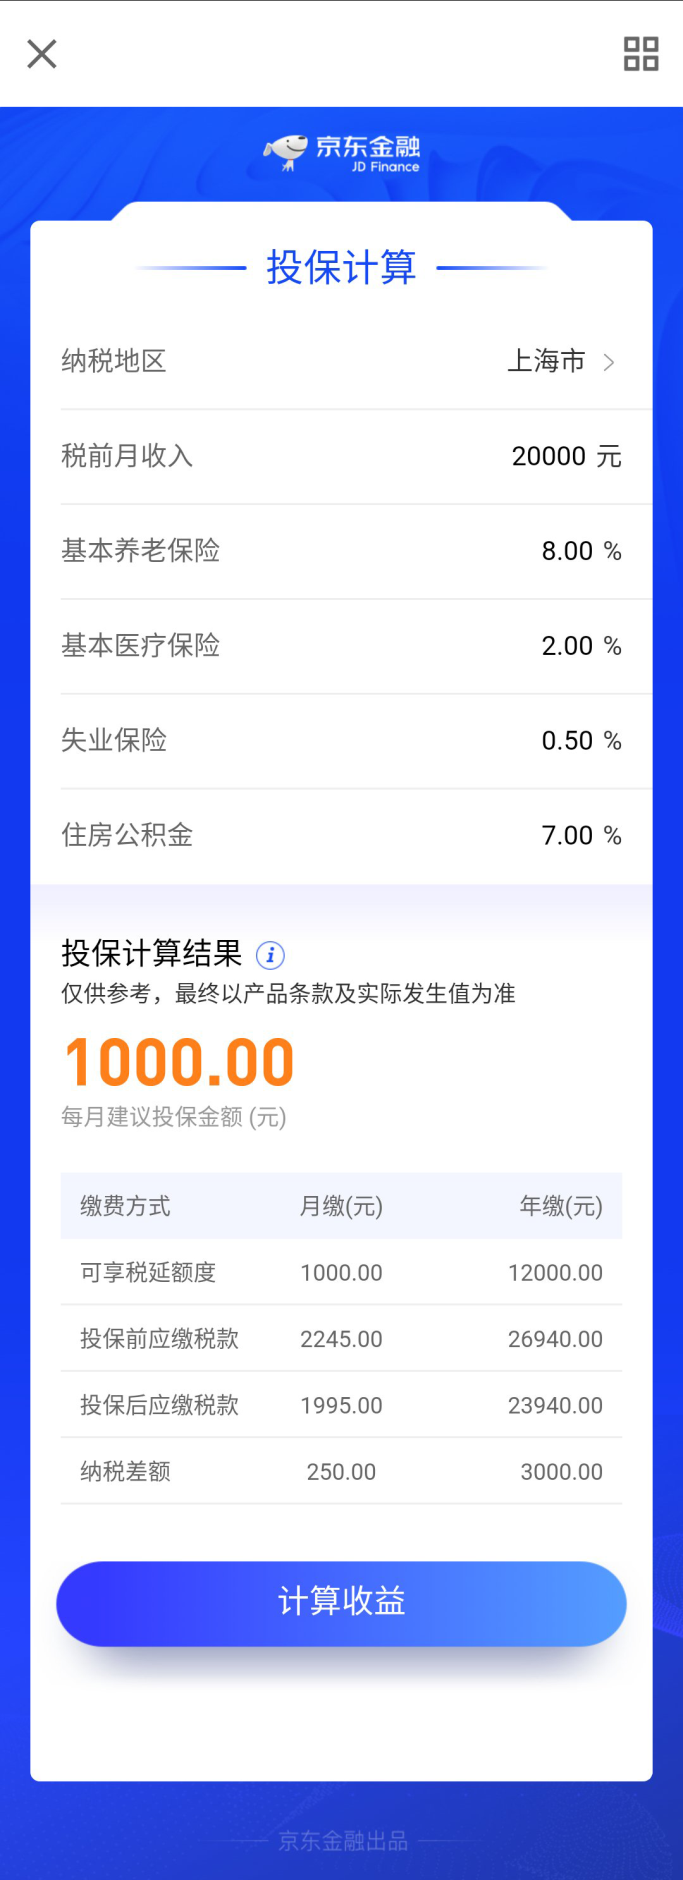 京东金融首发税延计算器 帮用户秒看每年优惠